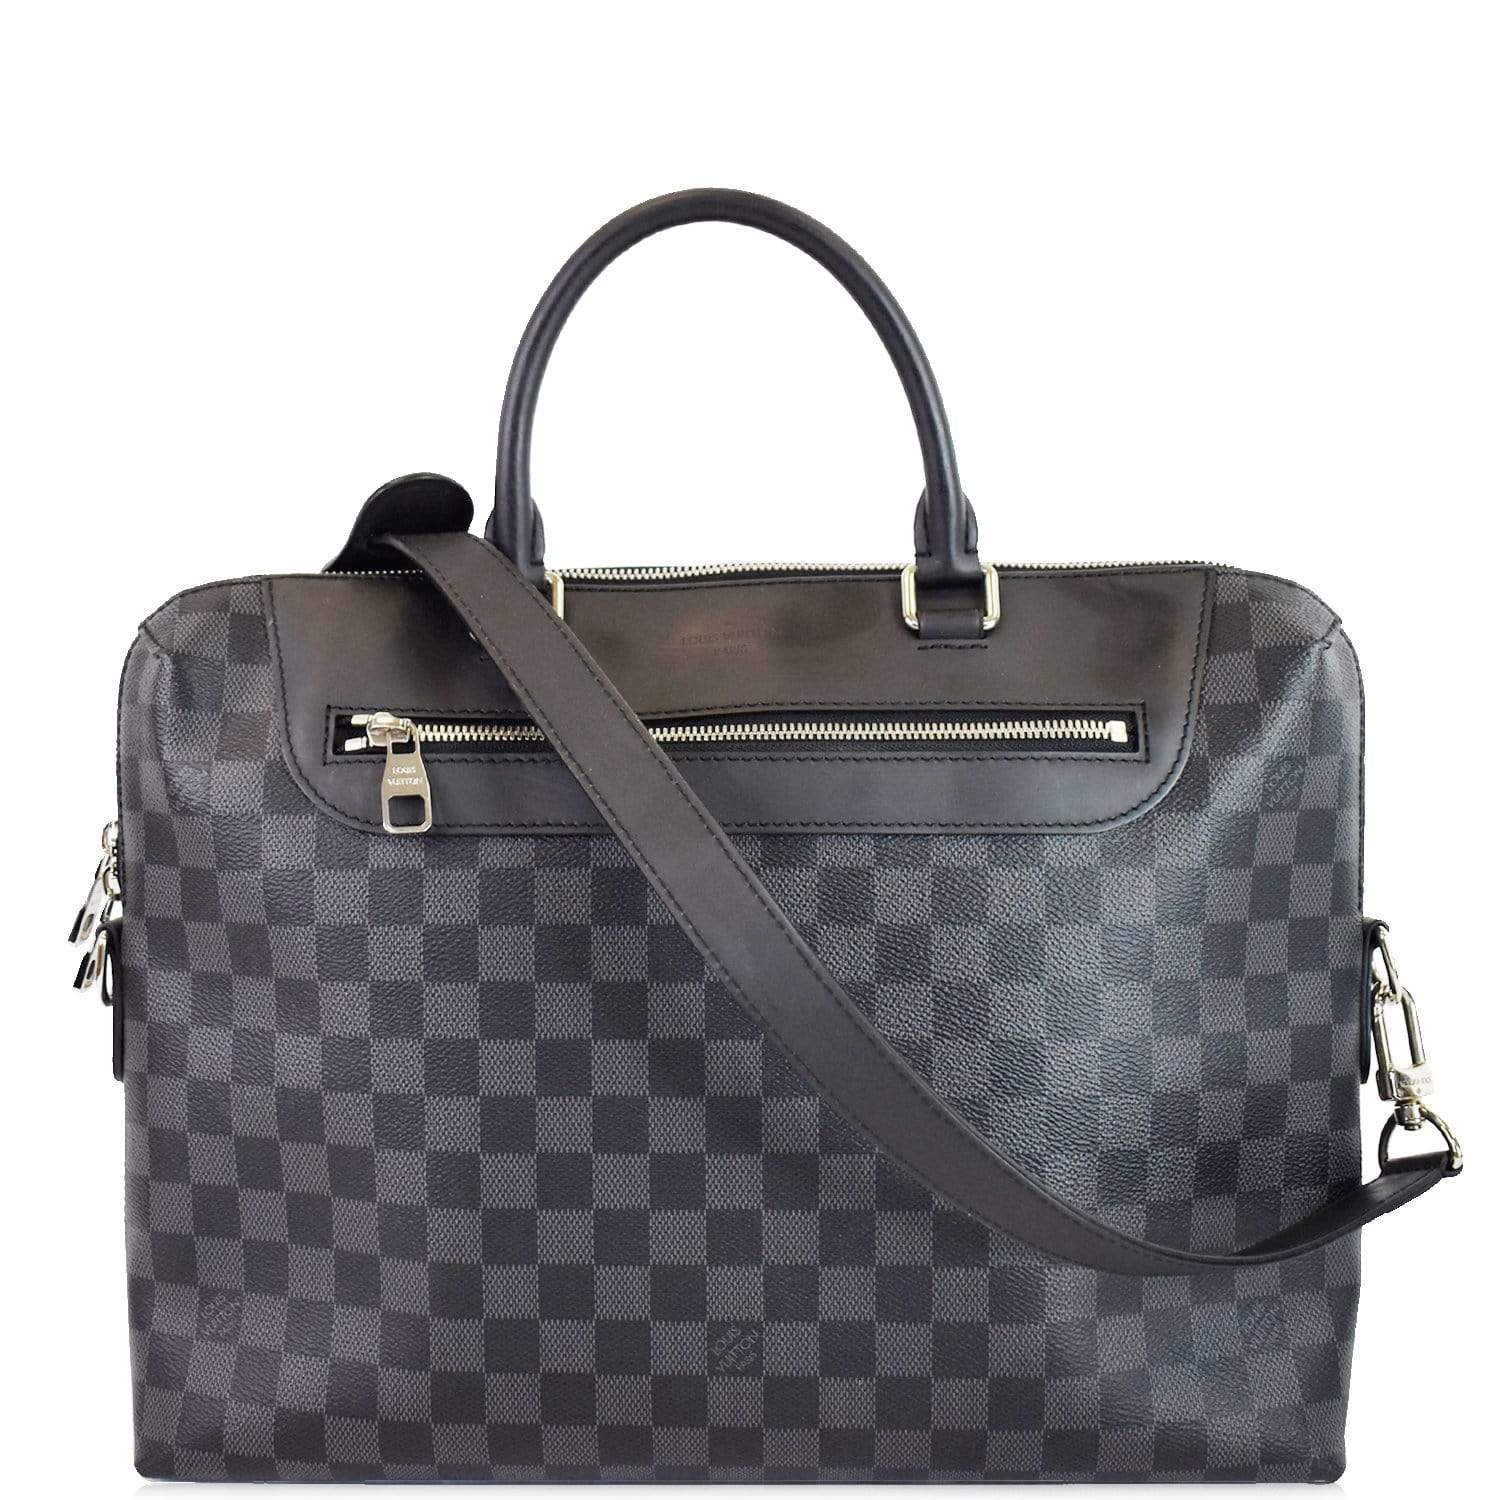 Louis Vuitton M50163 Porte-Documents Jour Briefcase Epi Leather #briefcases